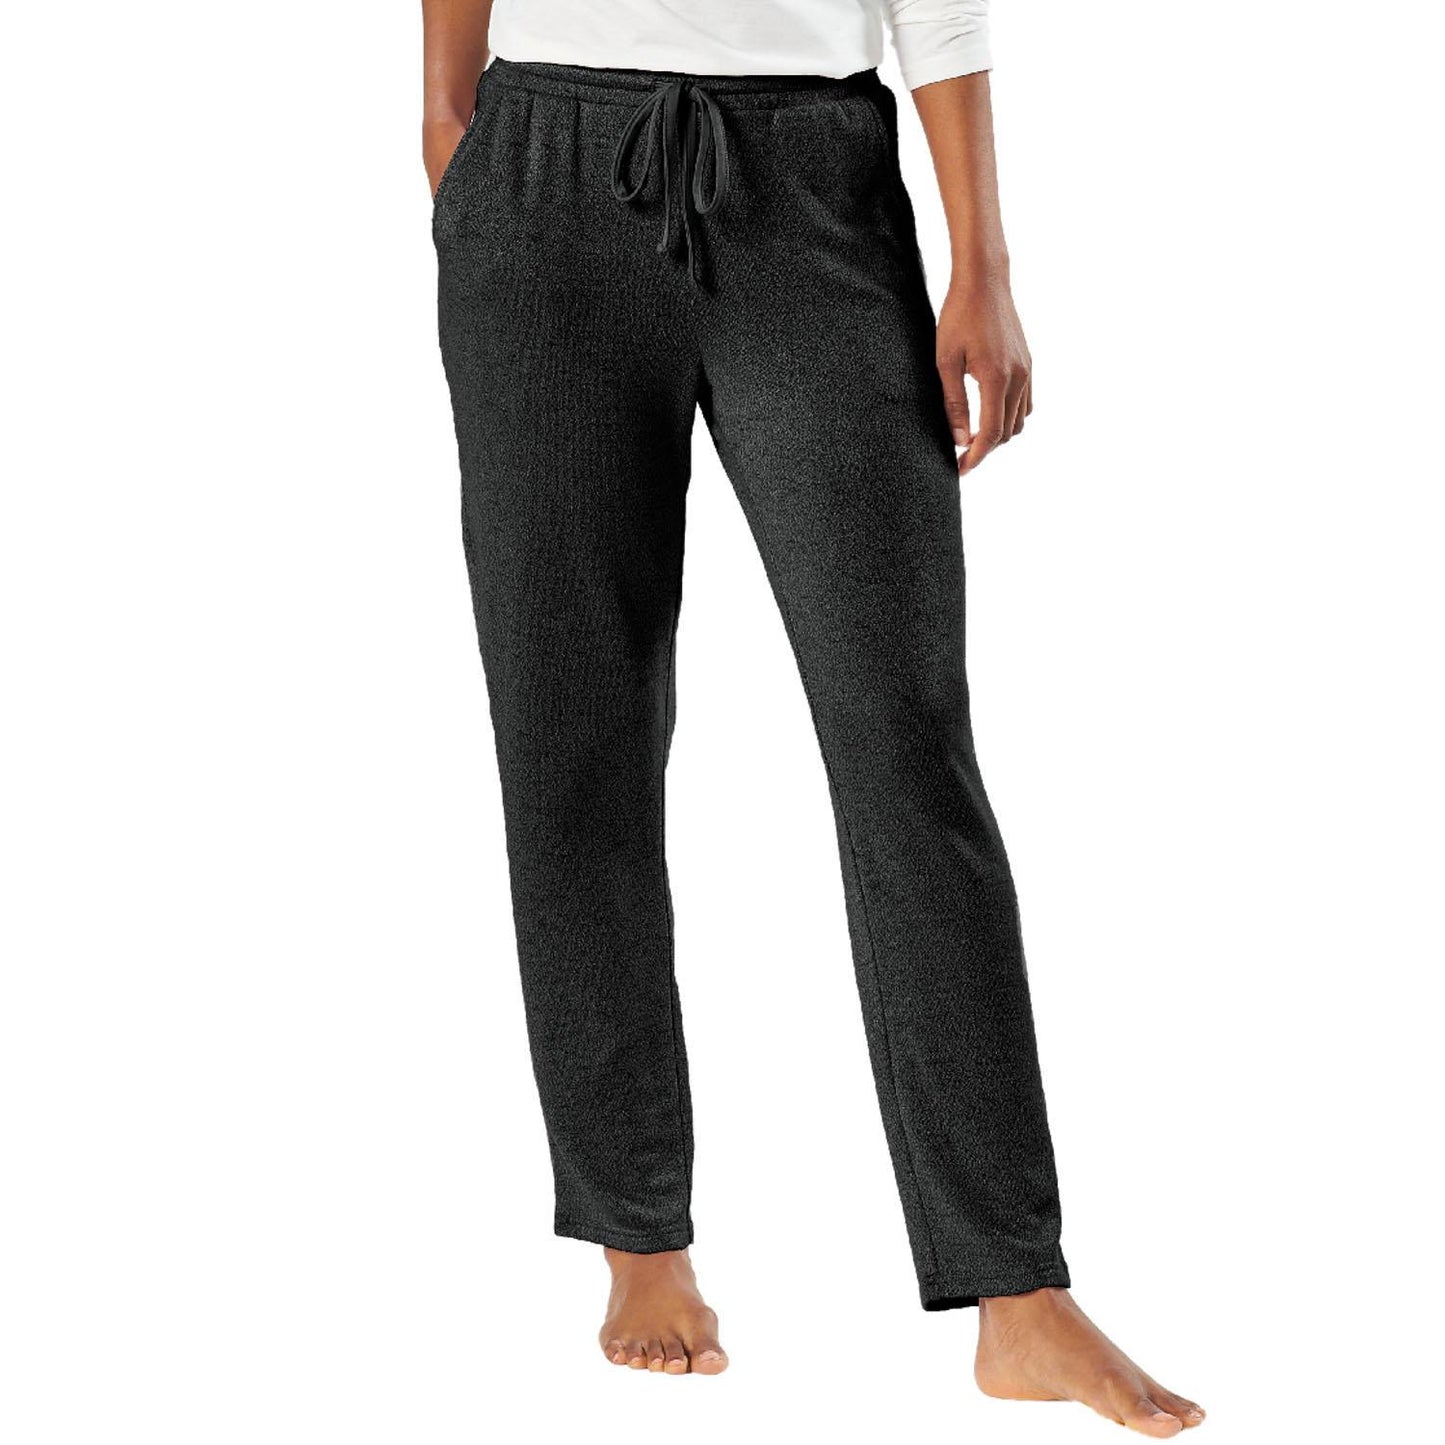 Natori Ankle Length Soft Stretch Knit Lounge Pants Black